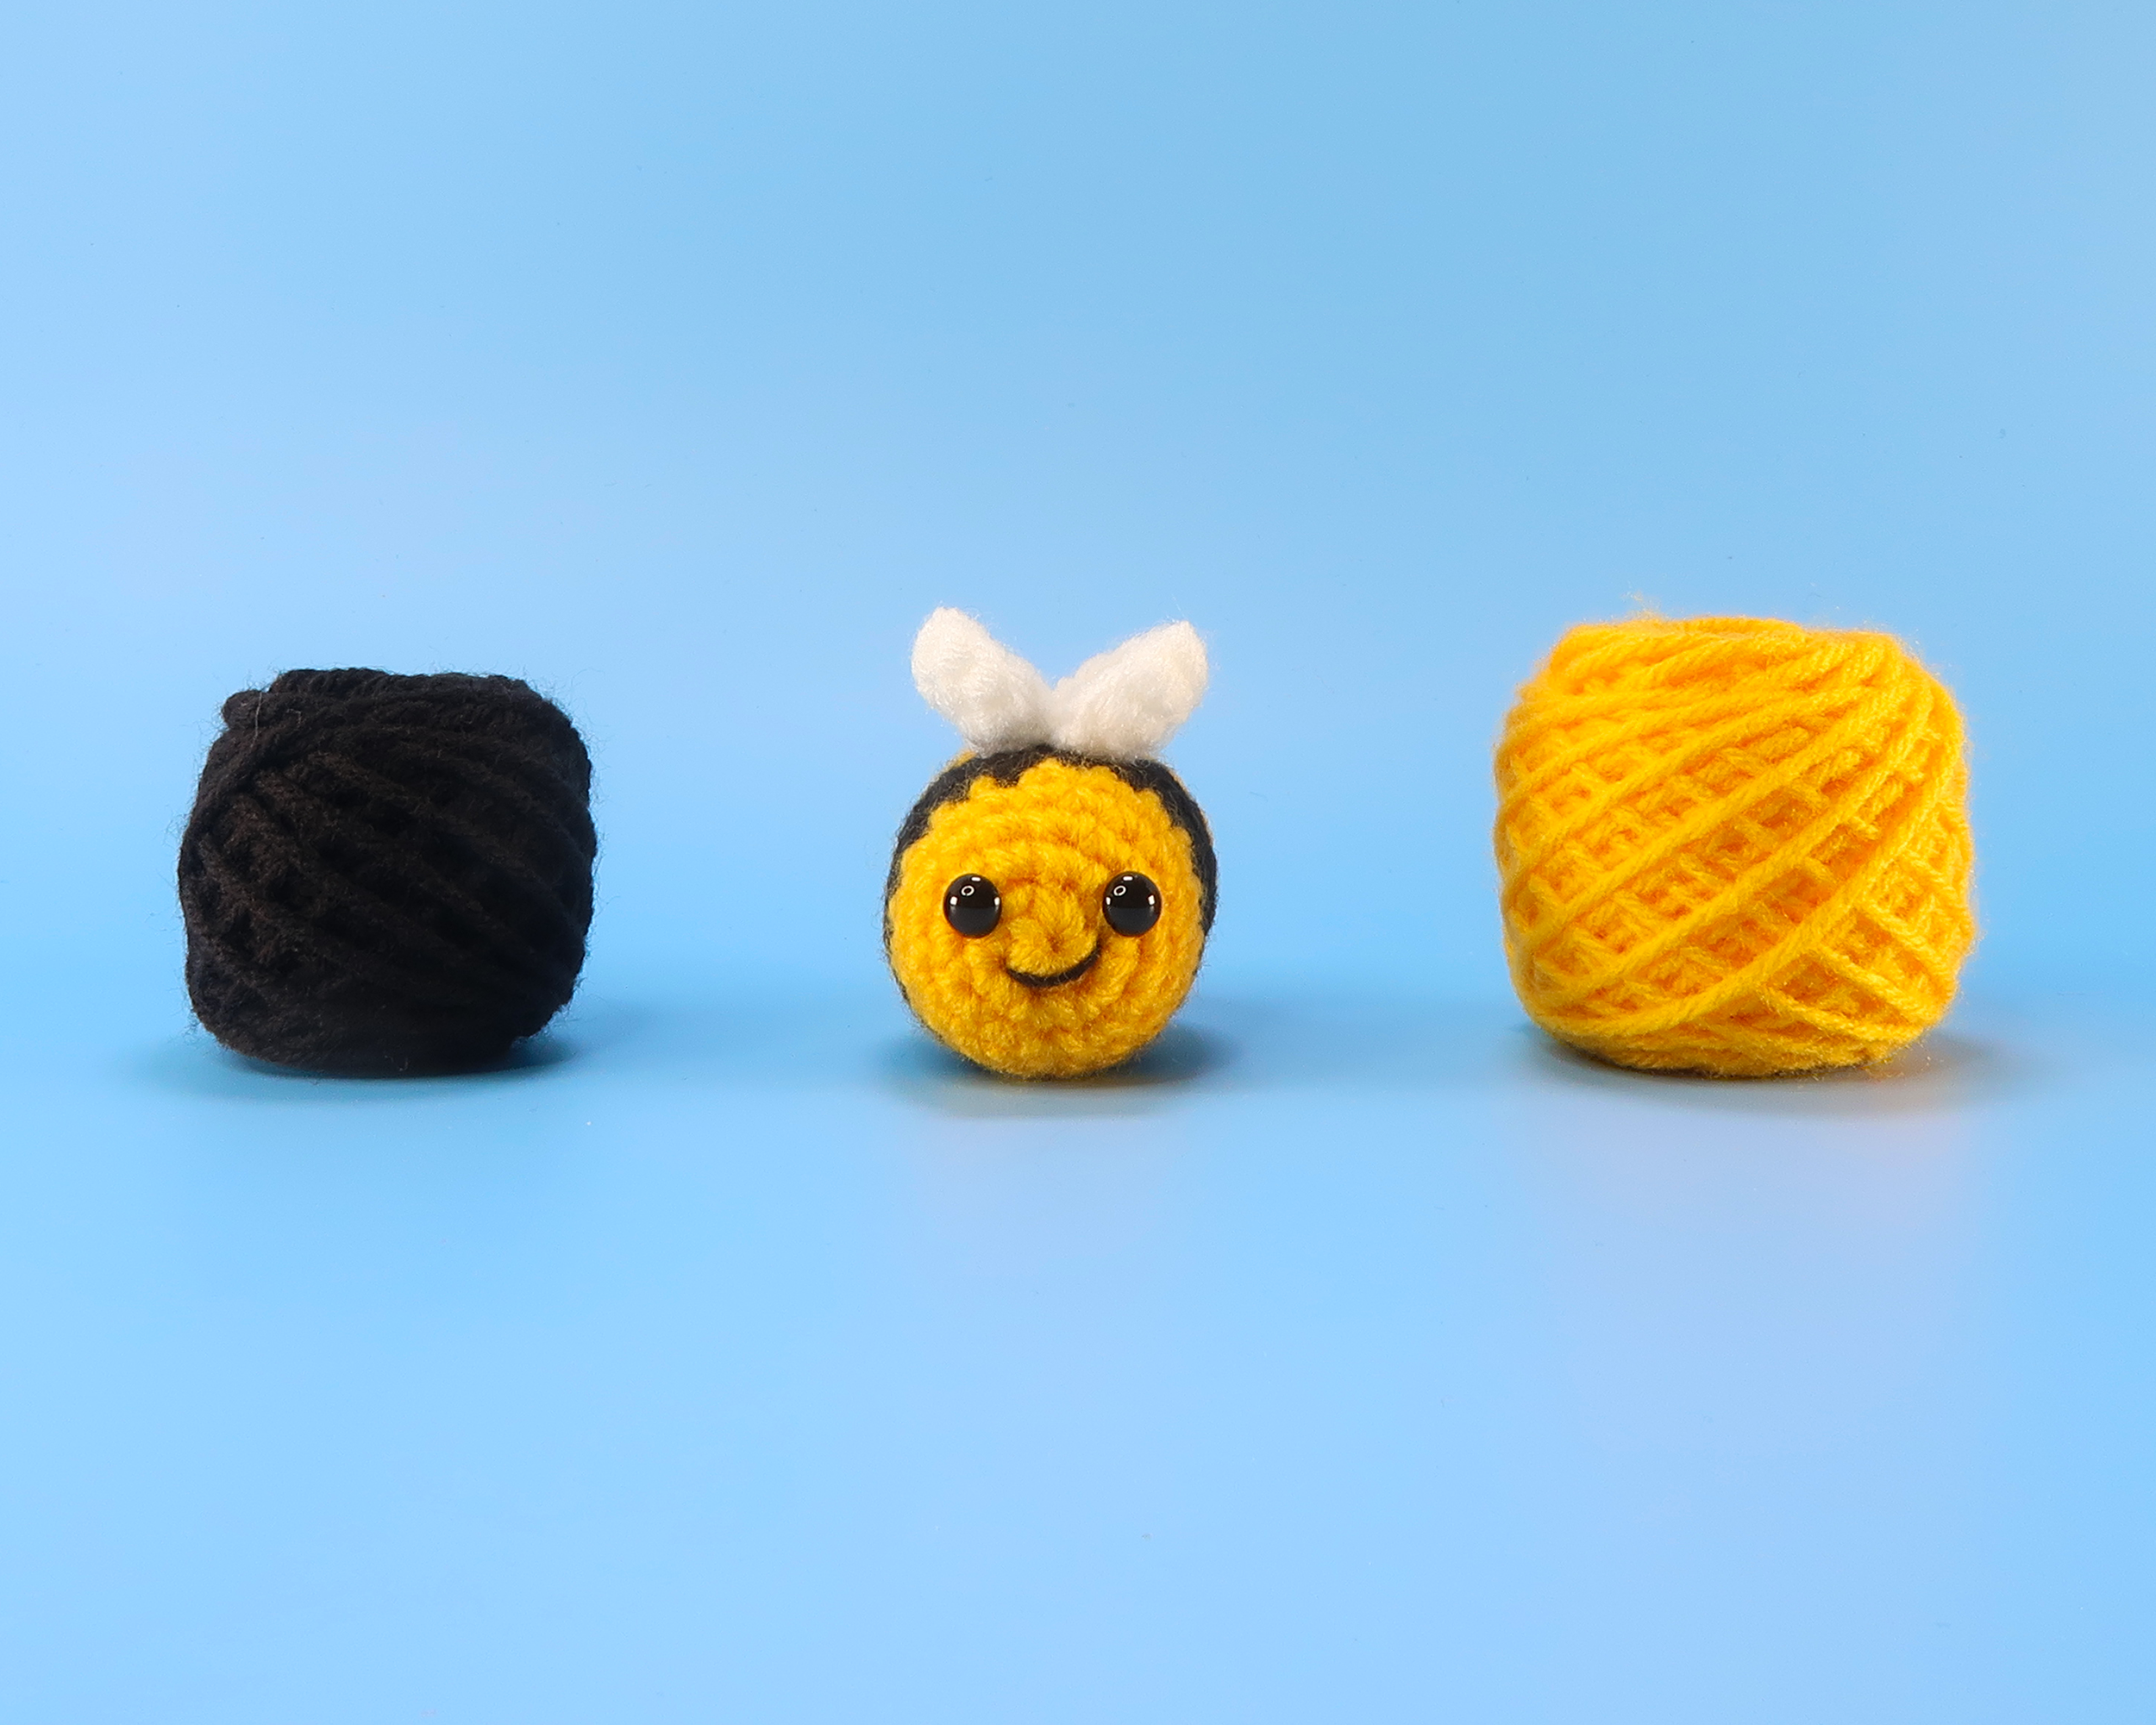 BeeBees Homestore DIY Beginners Crochet Kit